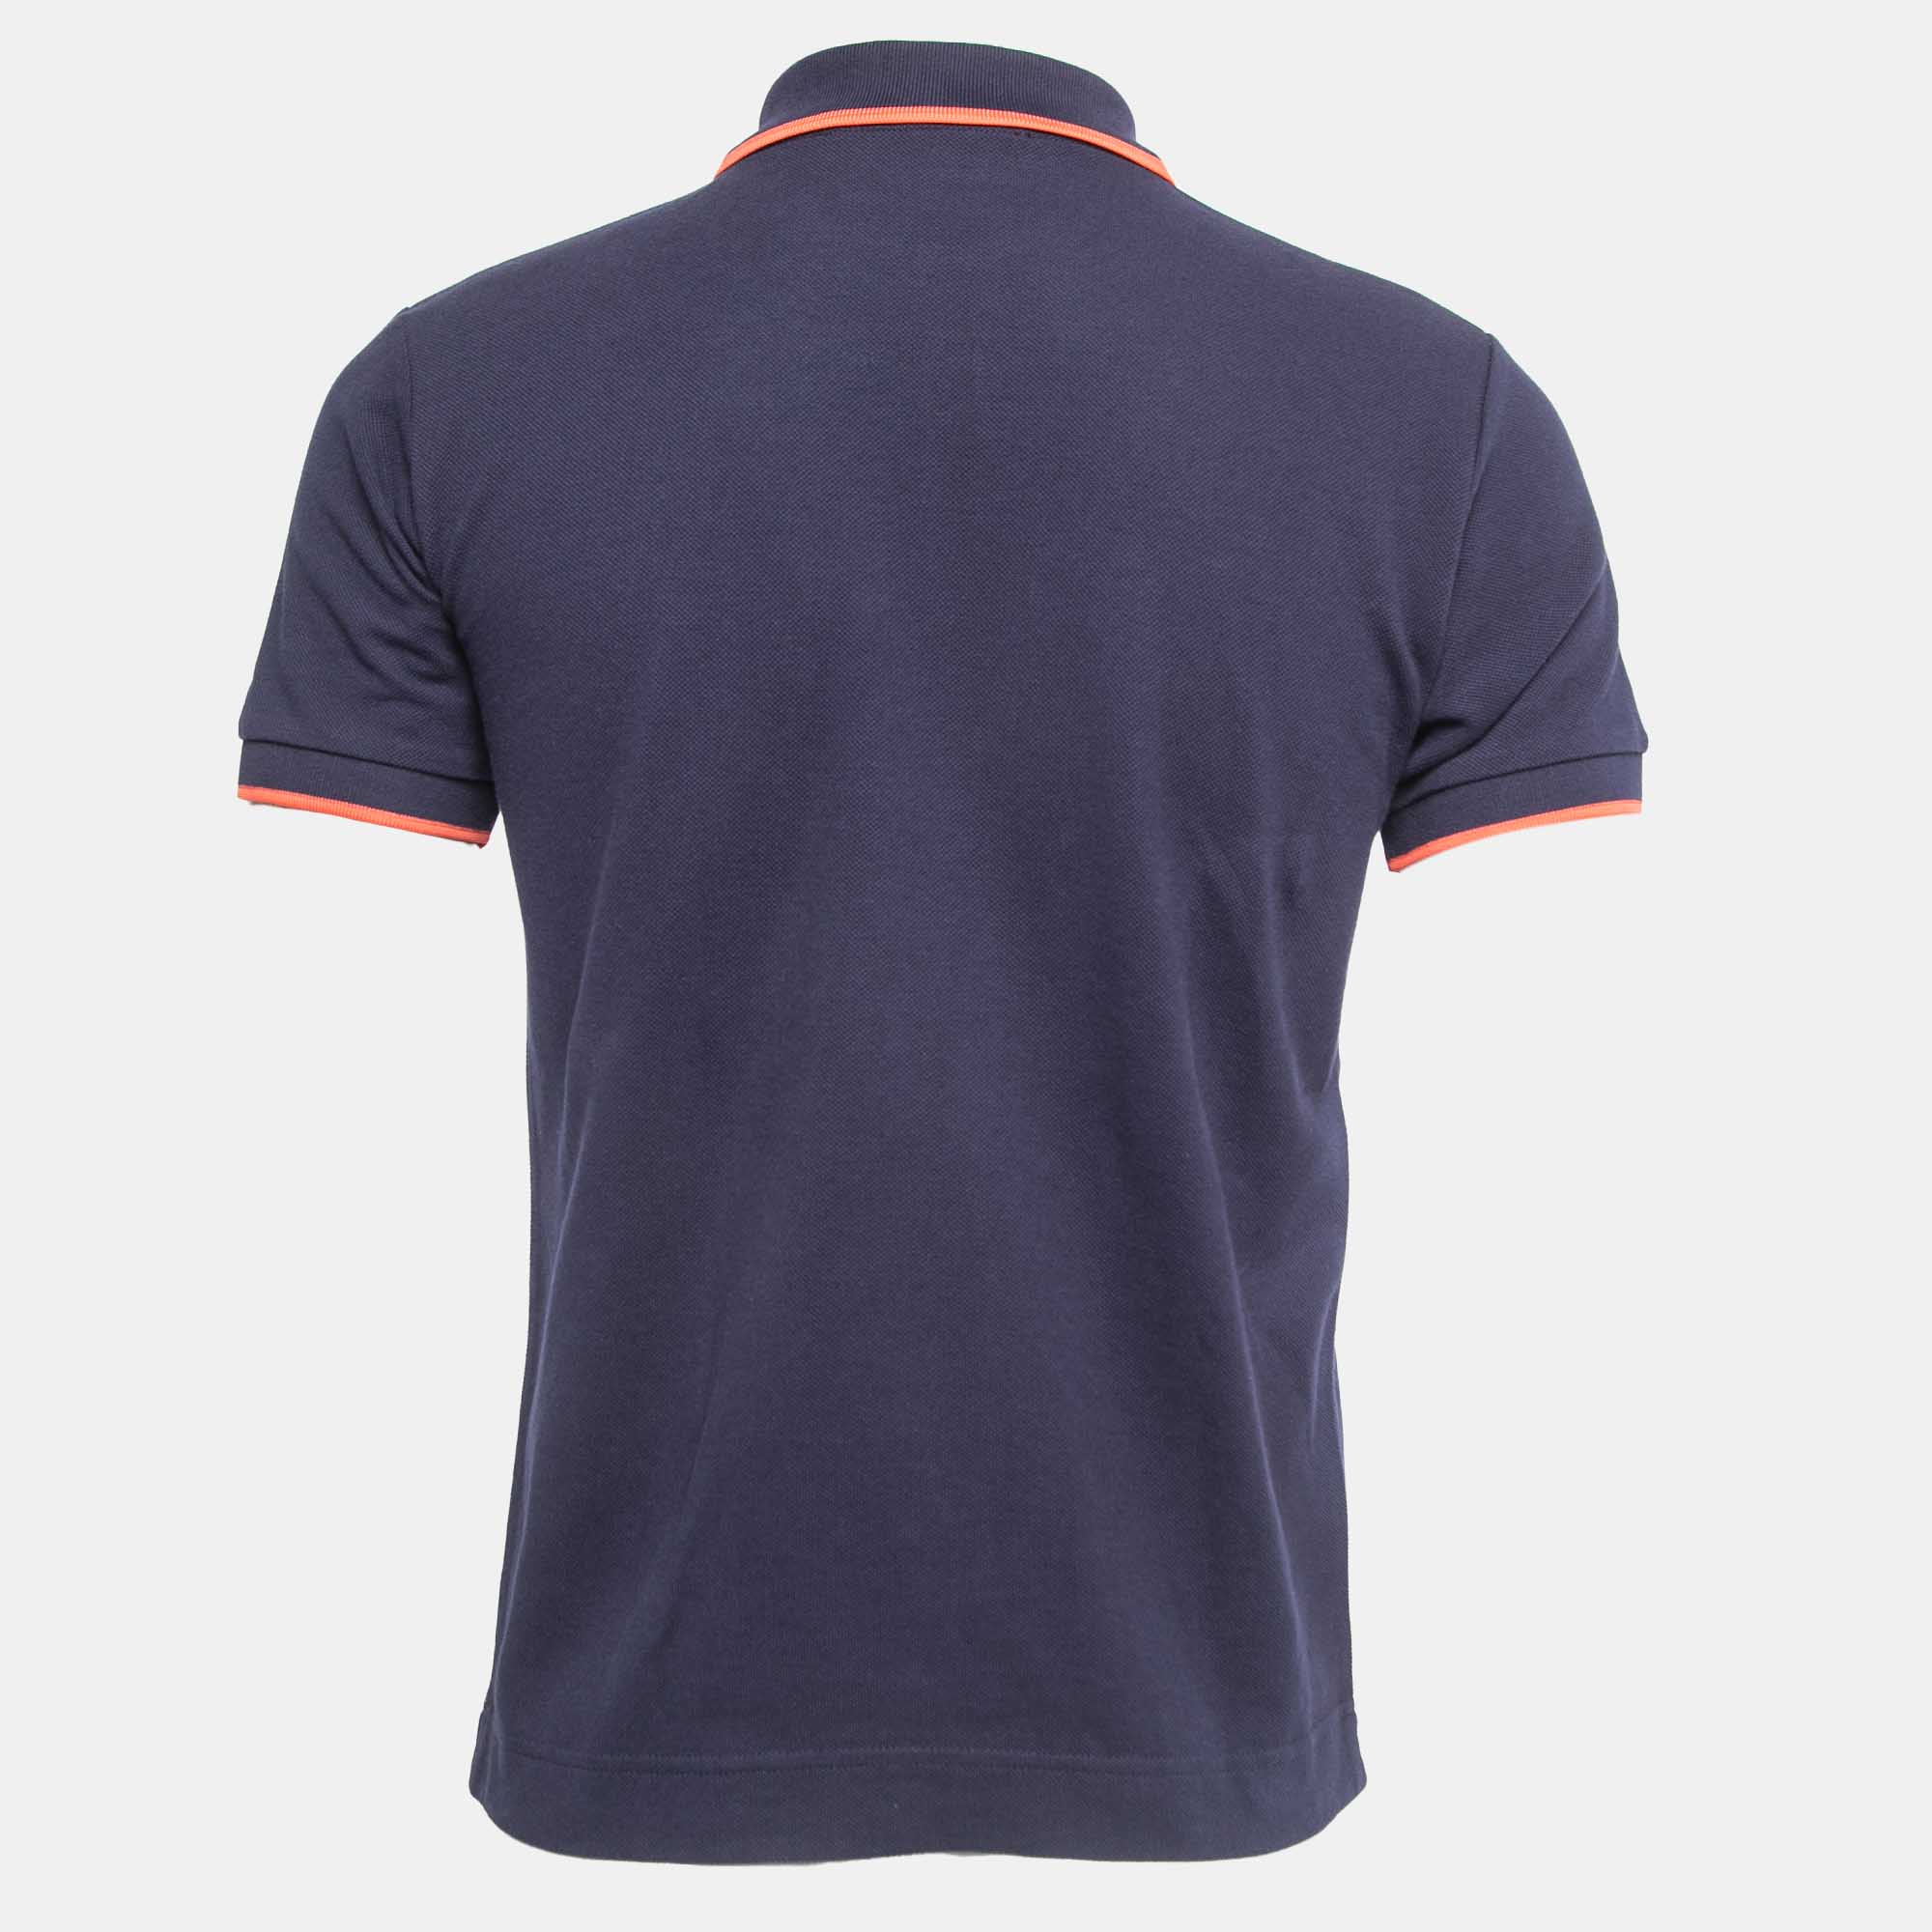 McQ by Alexander McQueen Navy Blue Cotton Pique Polo T-Shirt S